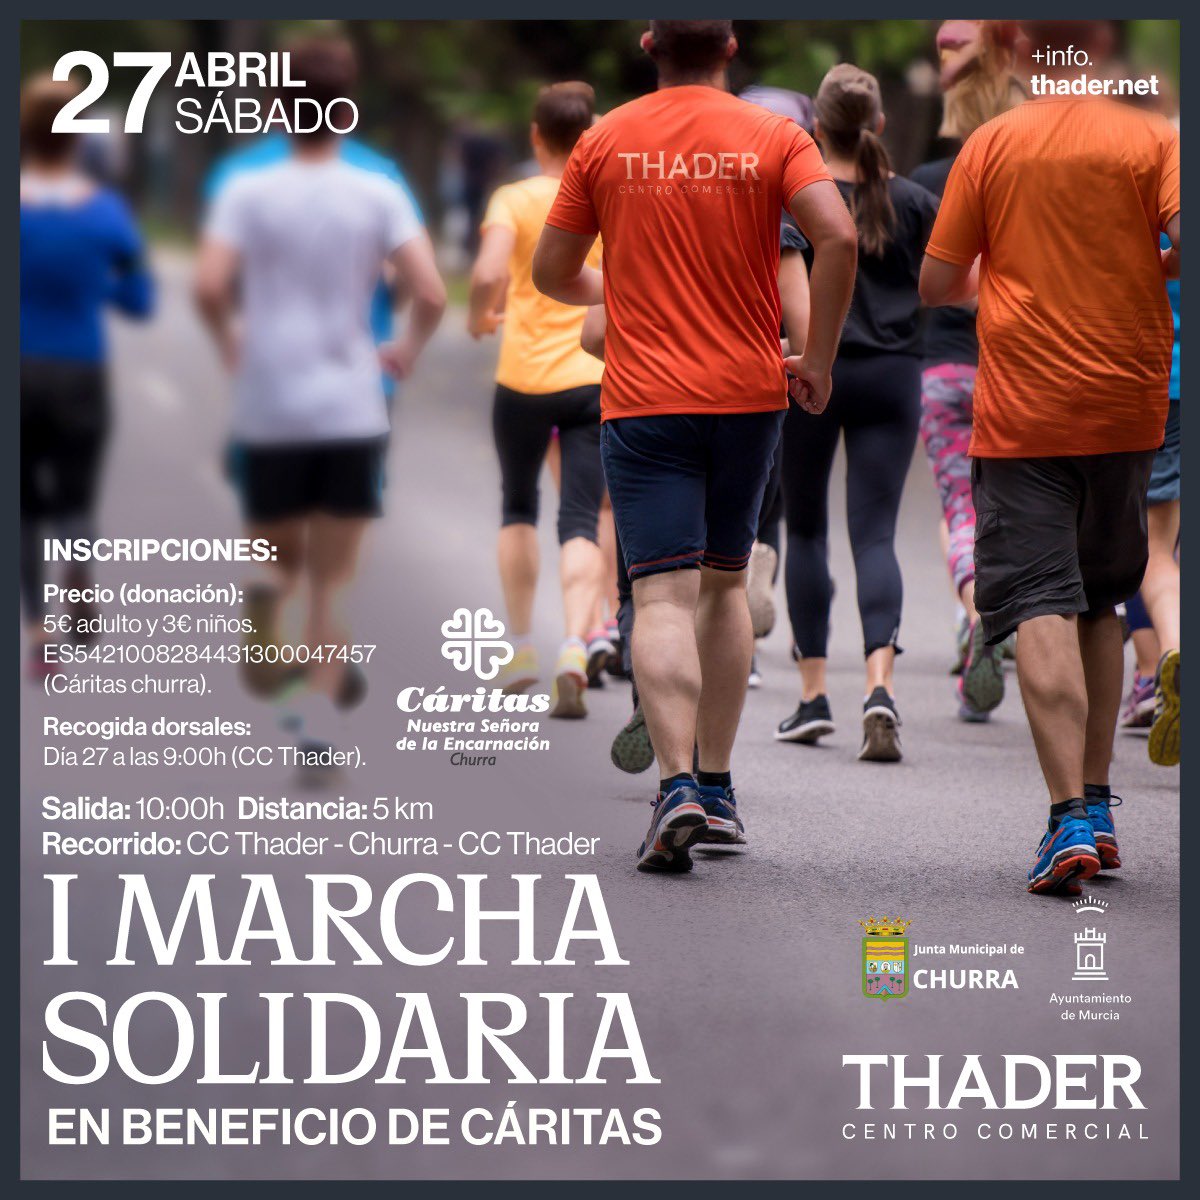 ¡Participa en la I Marcha Solidaria en beneficio de @CaritasRMurcia! 🗓️ Sábado 27 de abril ⌚️ 10:00h. 📍 CC Thader